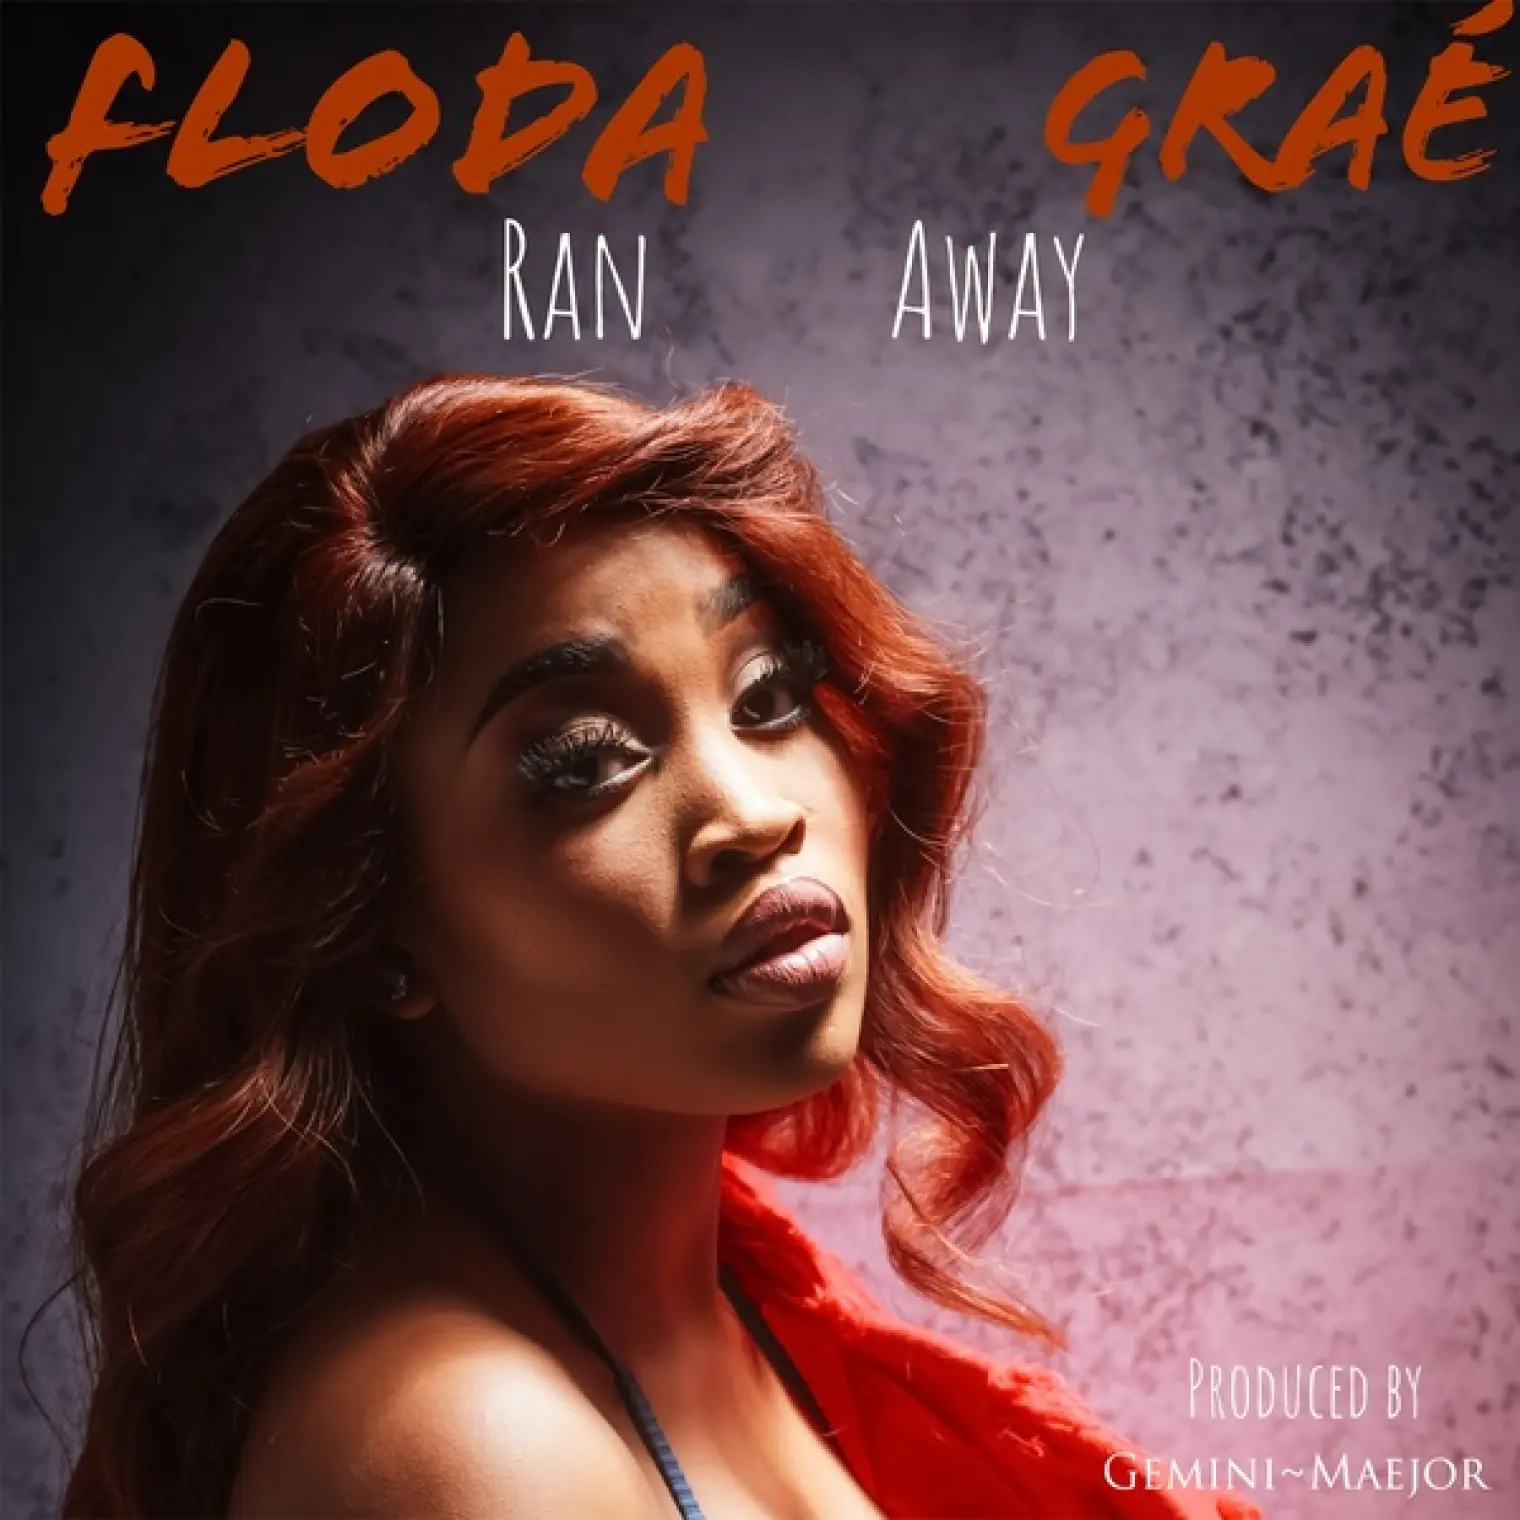 Ran Away -  Floda Graé 